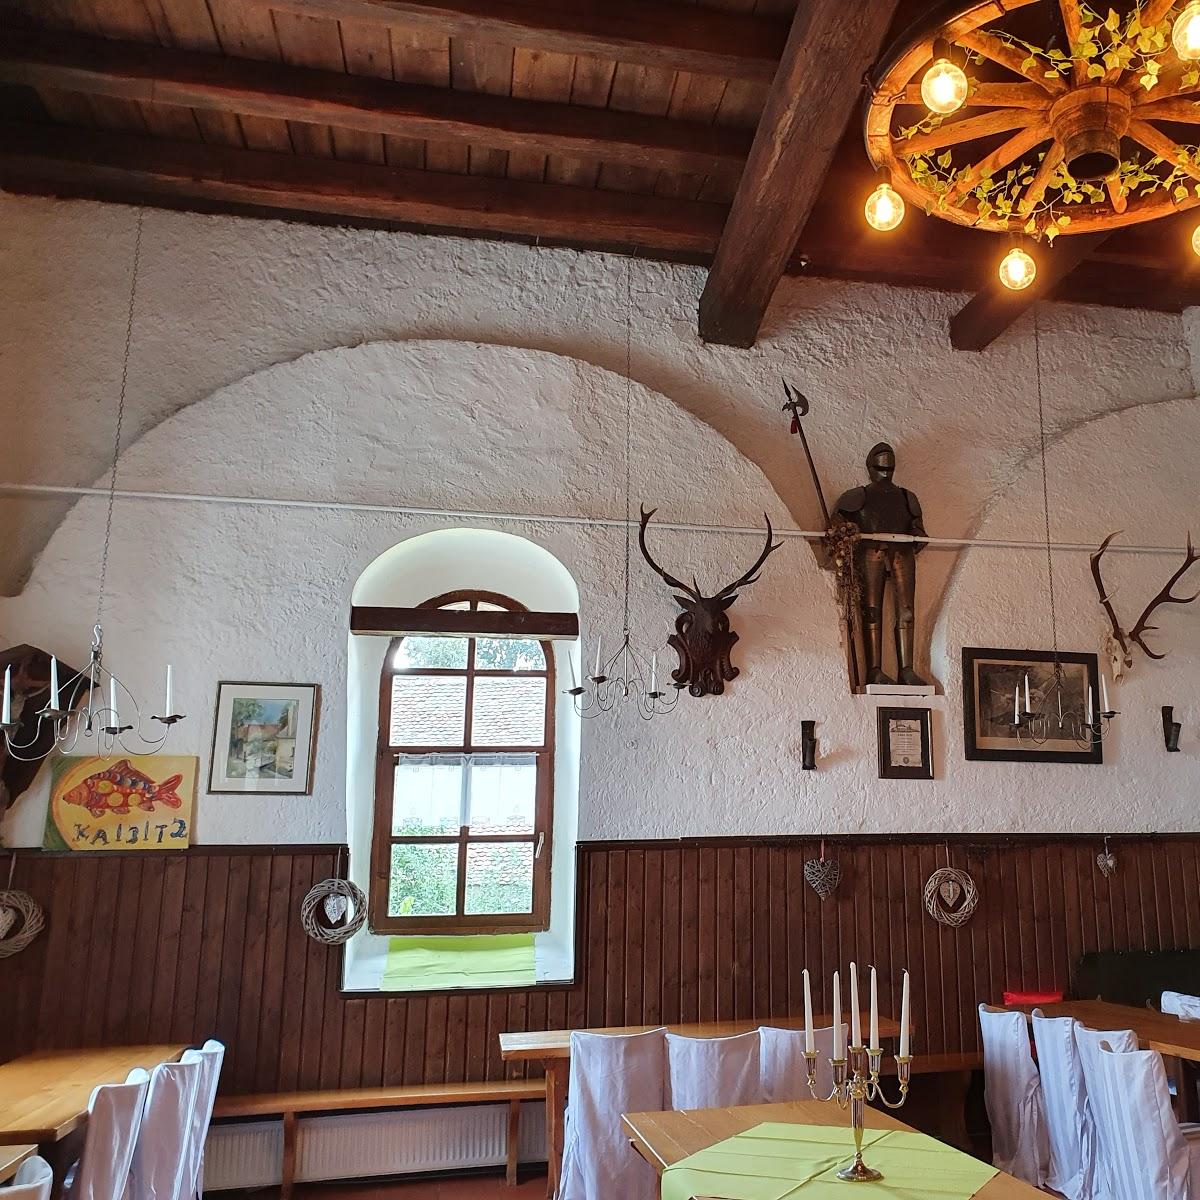 Restaurant "Schlossschänke Kaibitz" in  Kemnath